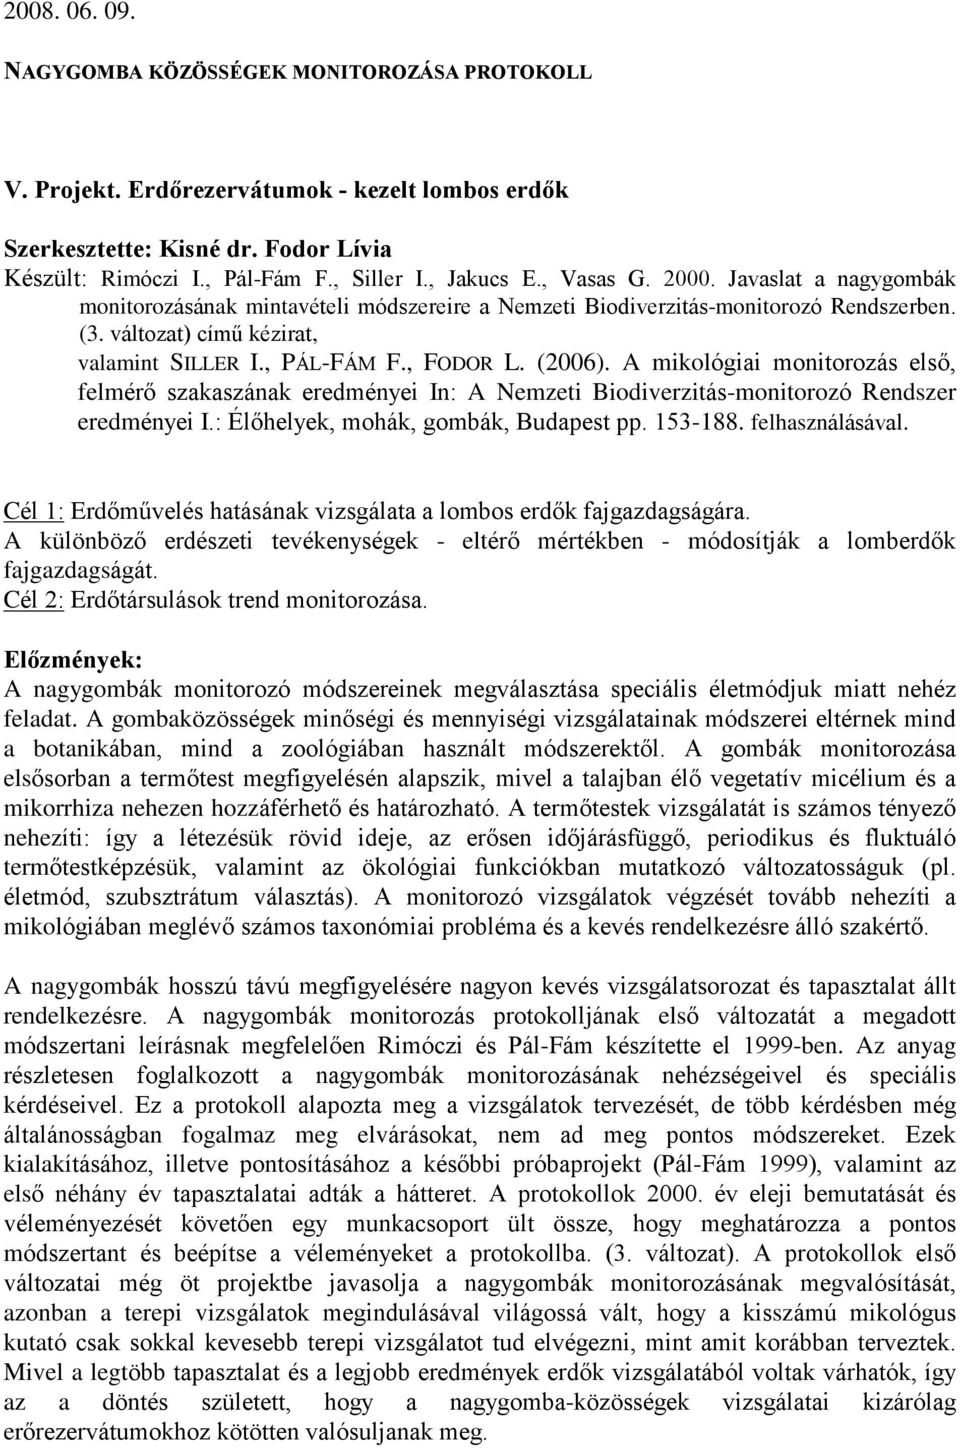 (2006). A mikológiai monitorozás elsõ, felmérõ szakaszának eredményei In: A Nemzeti Biodiverzitás-monitorozó Rendszer eredményei I.: Élõhelyek, mohák, gombák, Budapest pp. 153-188. felhasználásával.